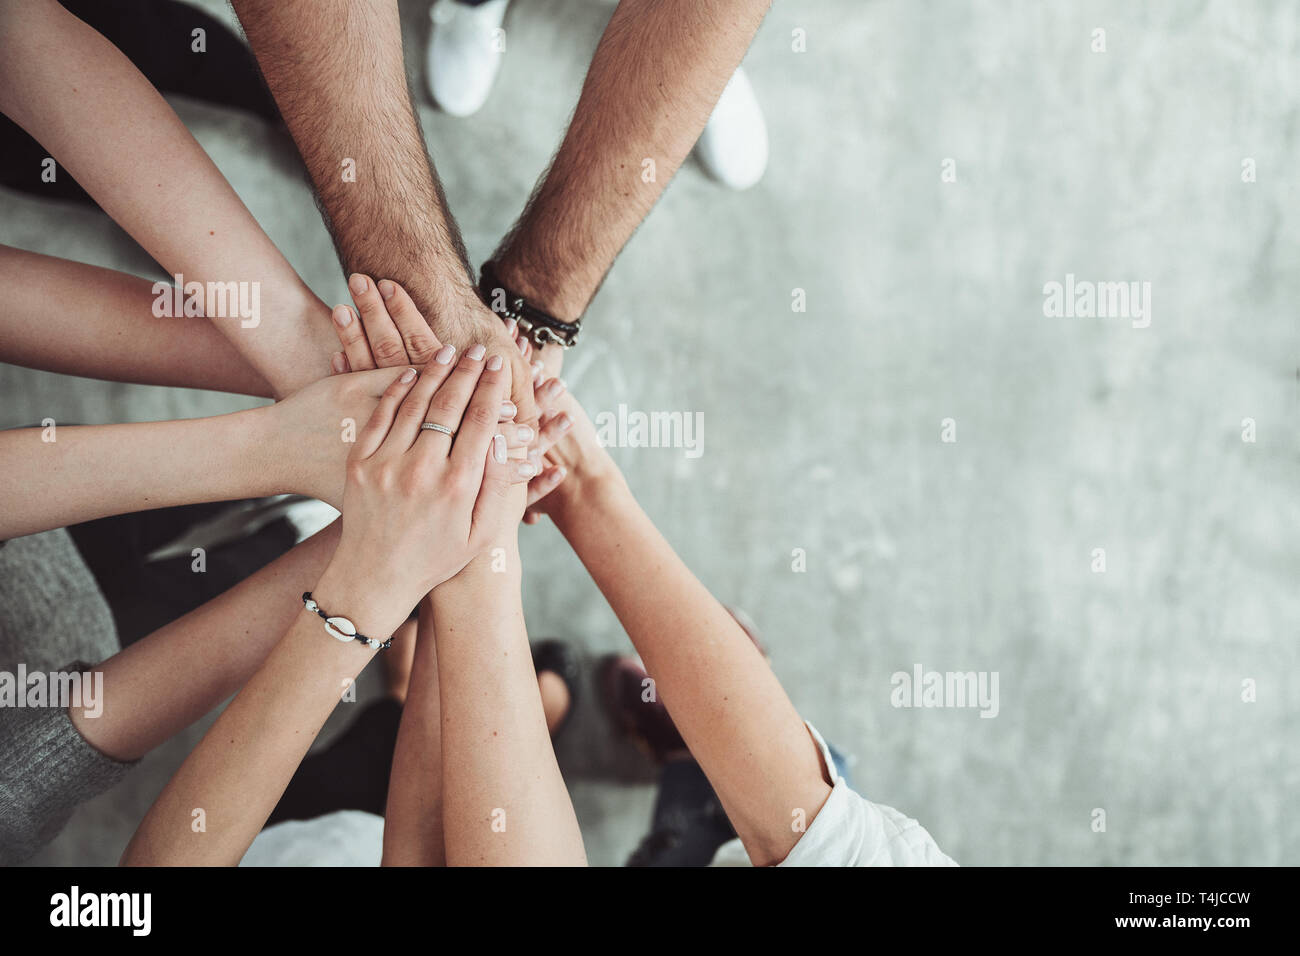 El trabajo en equipo, la unidad, el concepto de grupo de amigos ponen sus manos junto con espacio de copia Foto de stock